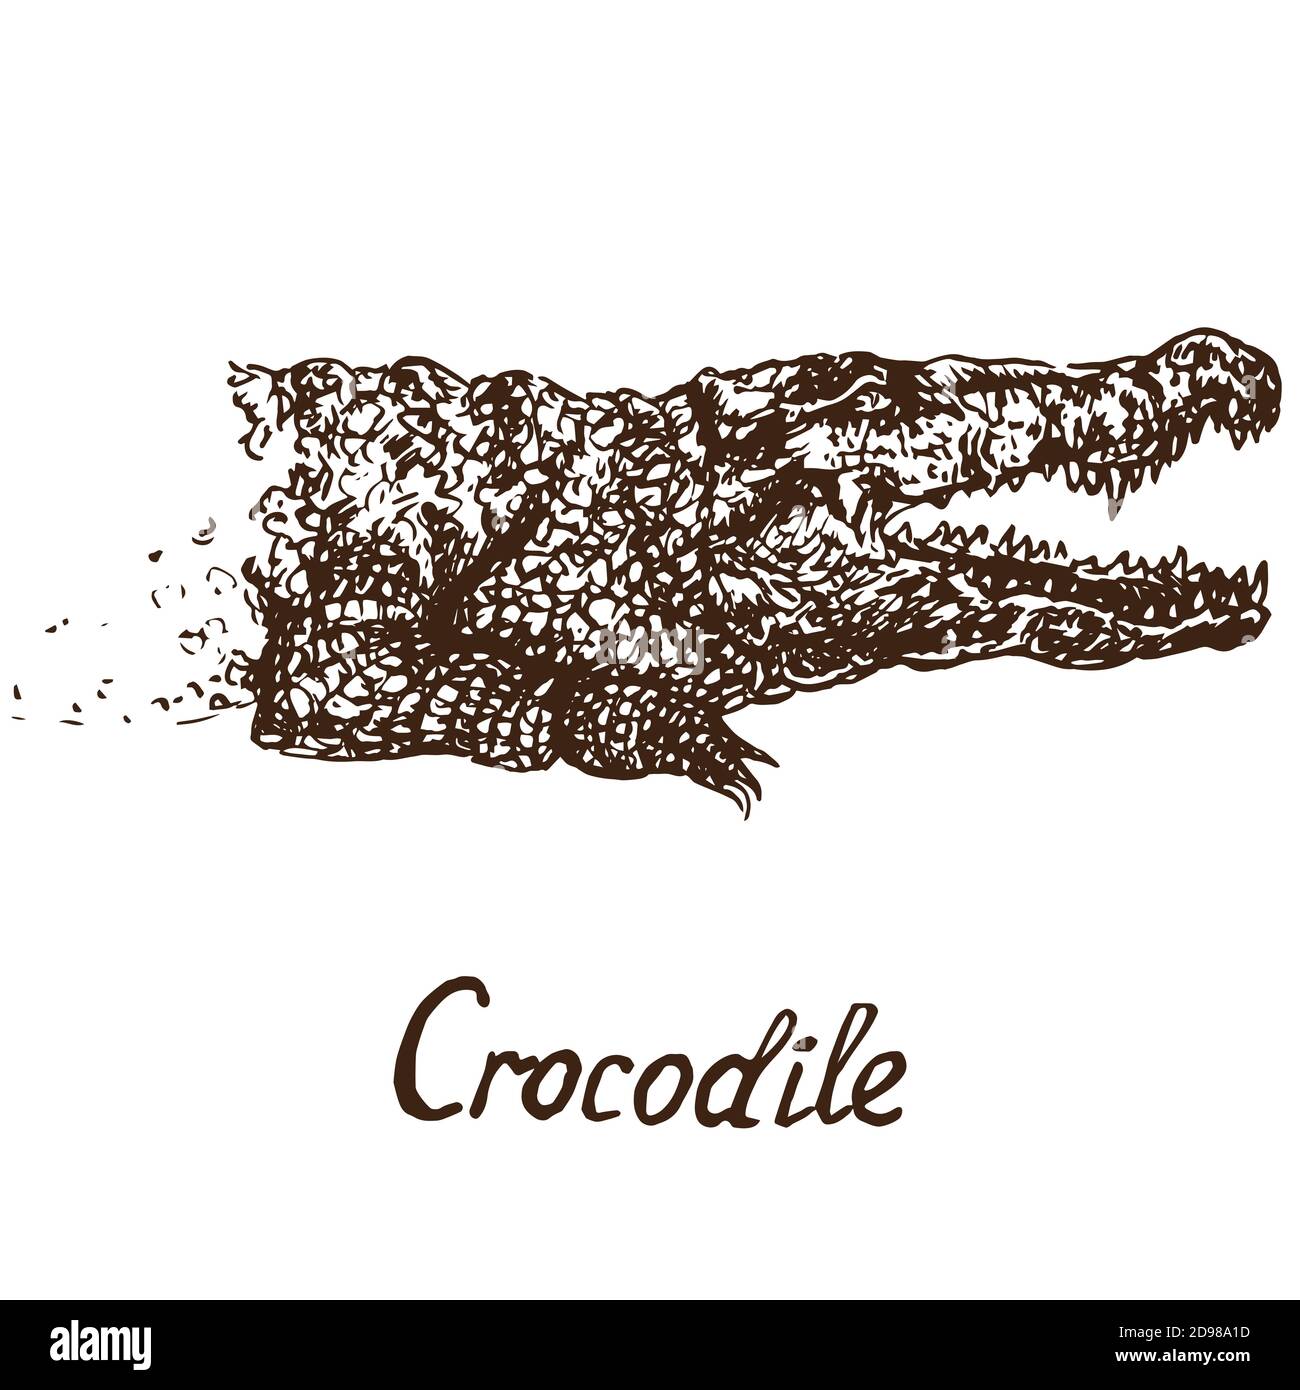 Retrato de cocodrilo (cocodrilo verdadero), dibujo de fideos con inscripción, estilo huecograbado Foto de stock